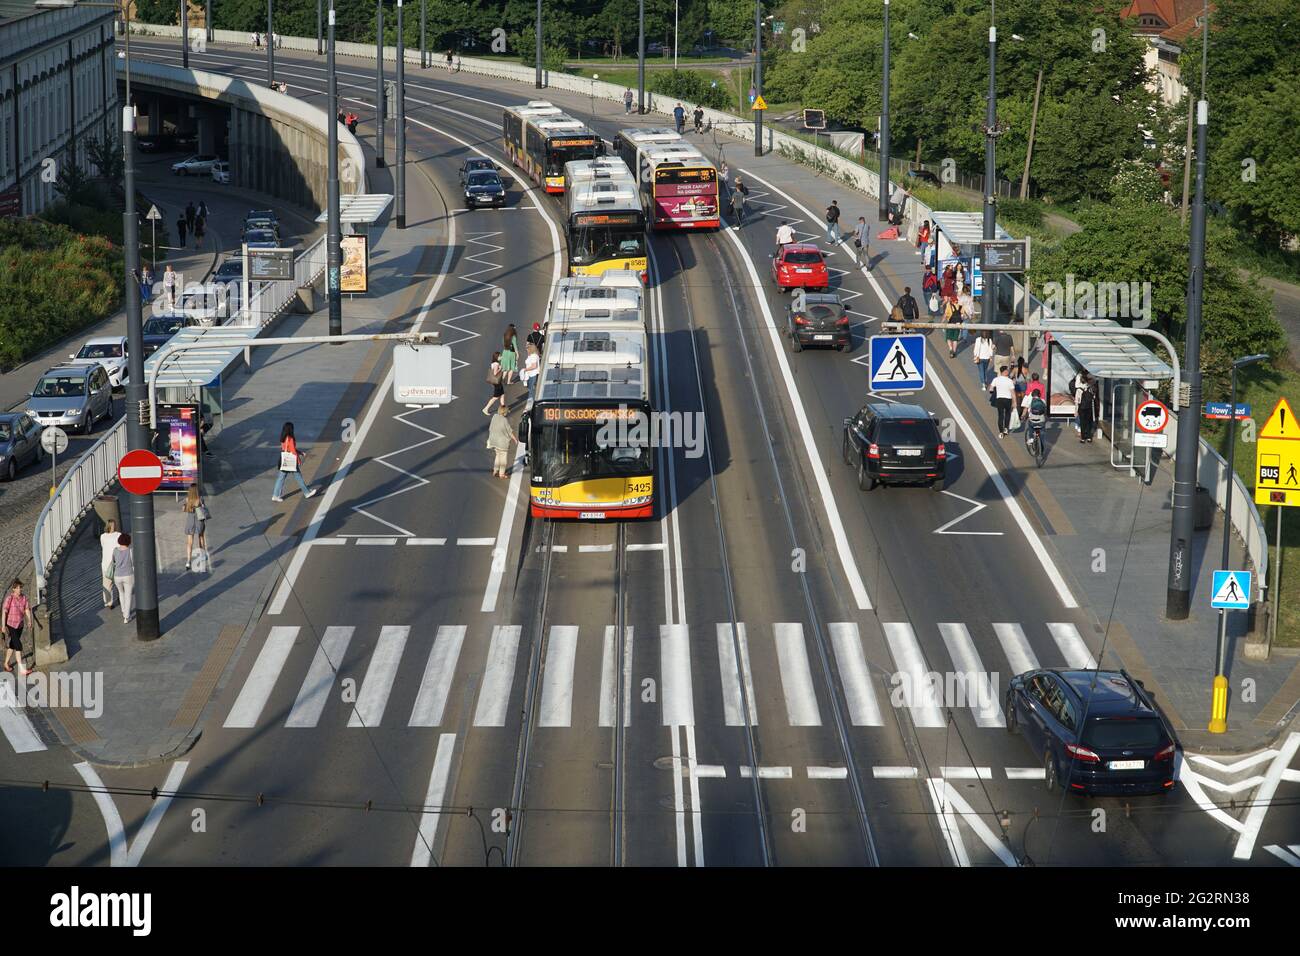 Varsavia, Polonia - 11 giugno 2021: Trasporto pubblico di Varsavia nel centro della città alla fermata della Città Vecchia. Gli autobus, i passangers sono waityng, geting on e out. Foto Stock